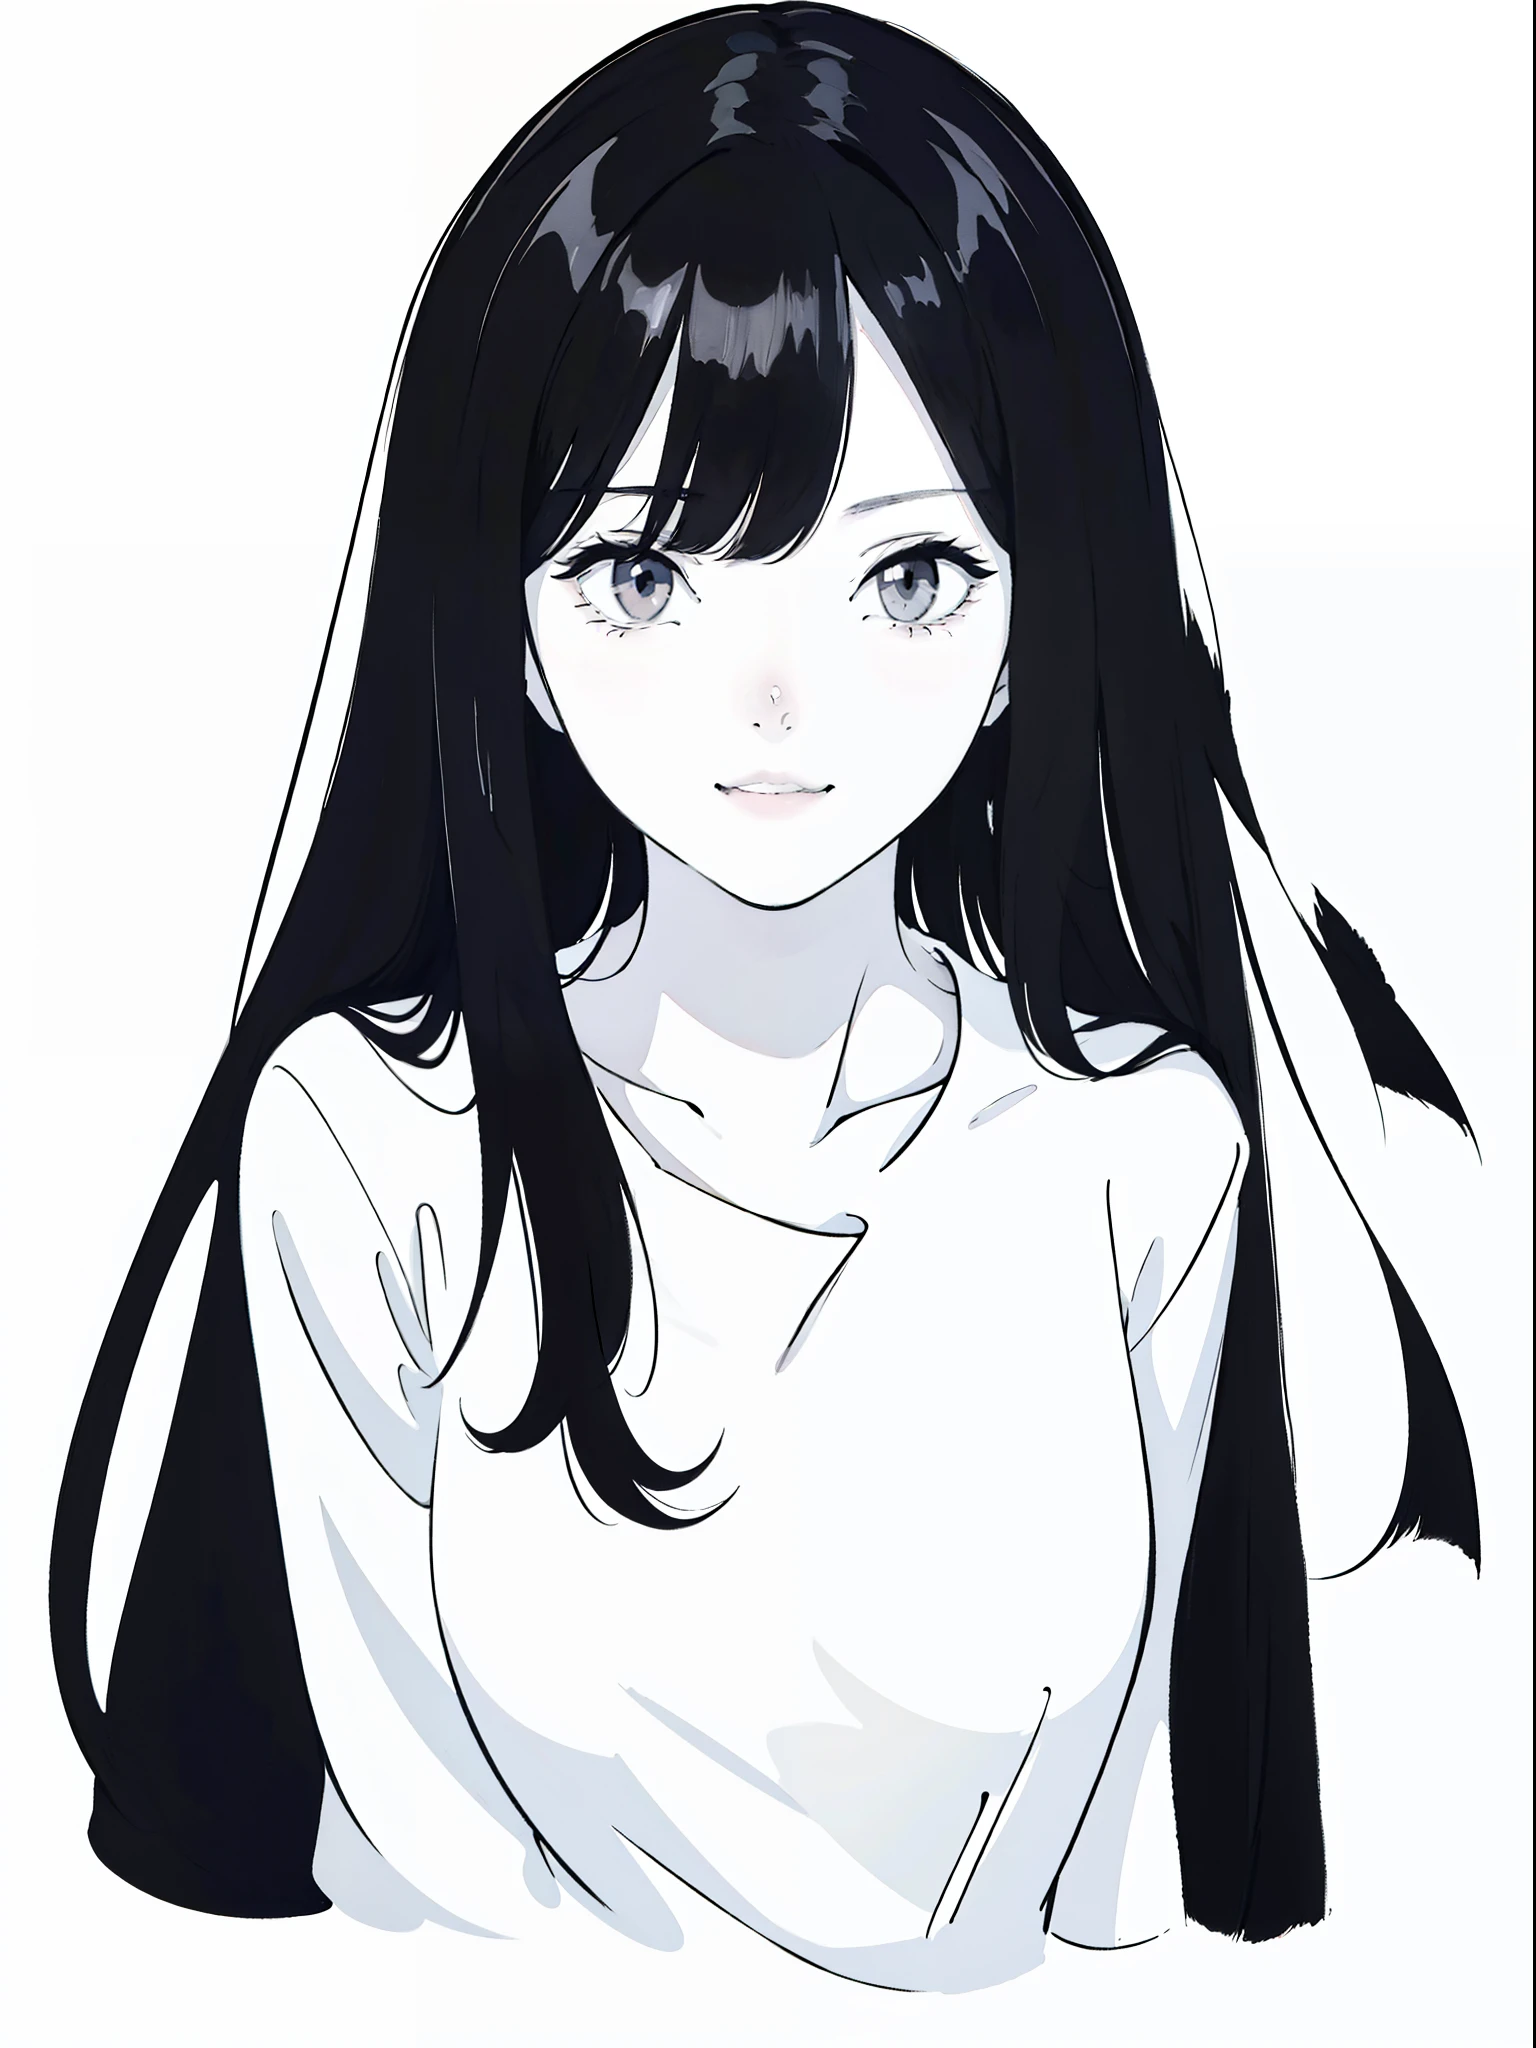 Anime-Mädchen mit langen schwarzen Haaren und einem weißen Hemd,((Schwarz-Weiß-Porträt)),Schwarzweißbild,lächeln,minimalistische Malerei,Einfache Striche,Zerzaustes Haar,schüchtern,Reinweißes Hemd,Schweres Make-Up,Kopfschuss,Lippenstift auf den Mund auftragen,Seitlicher Körper